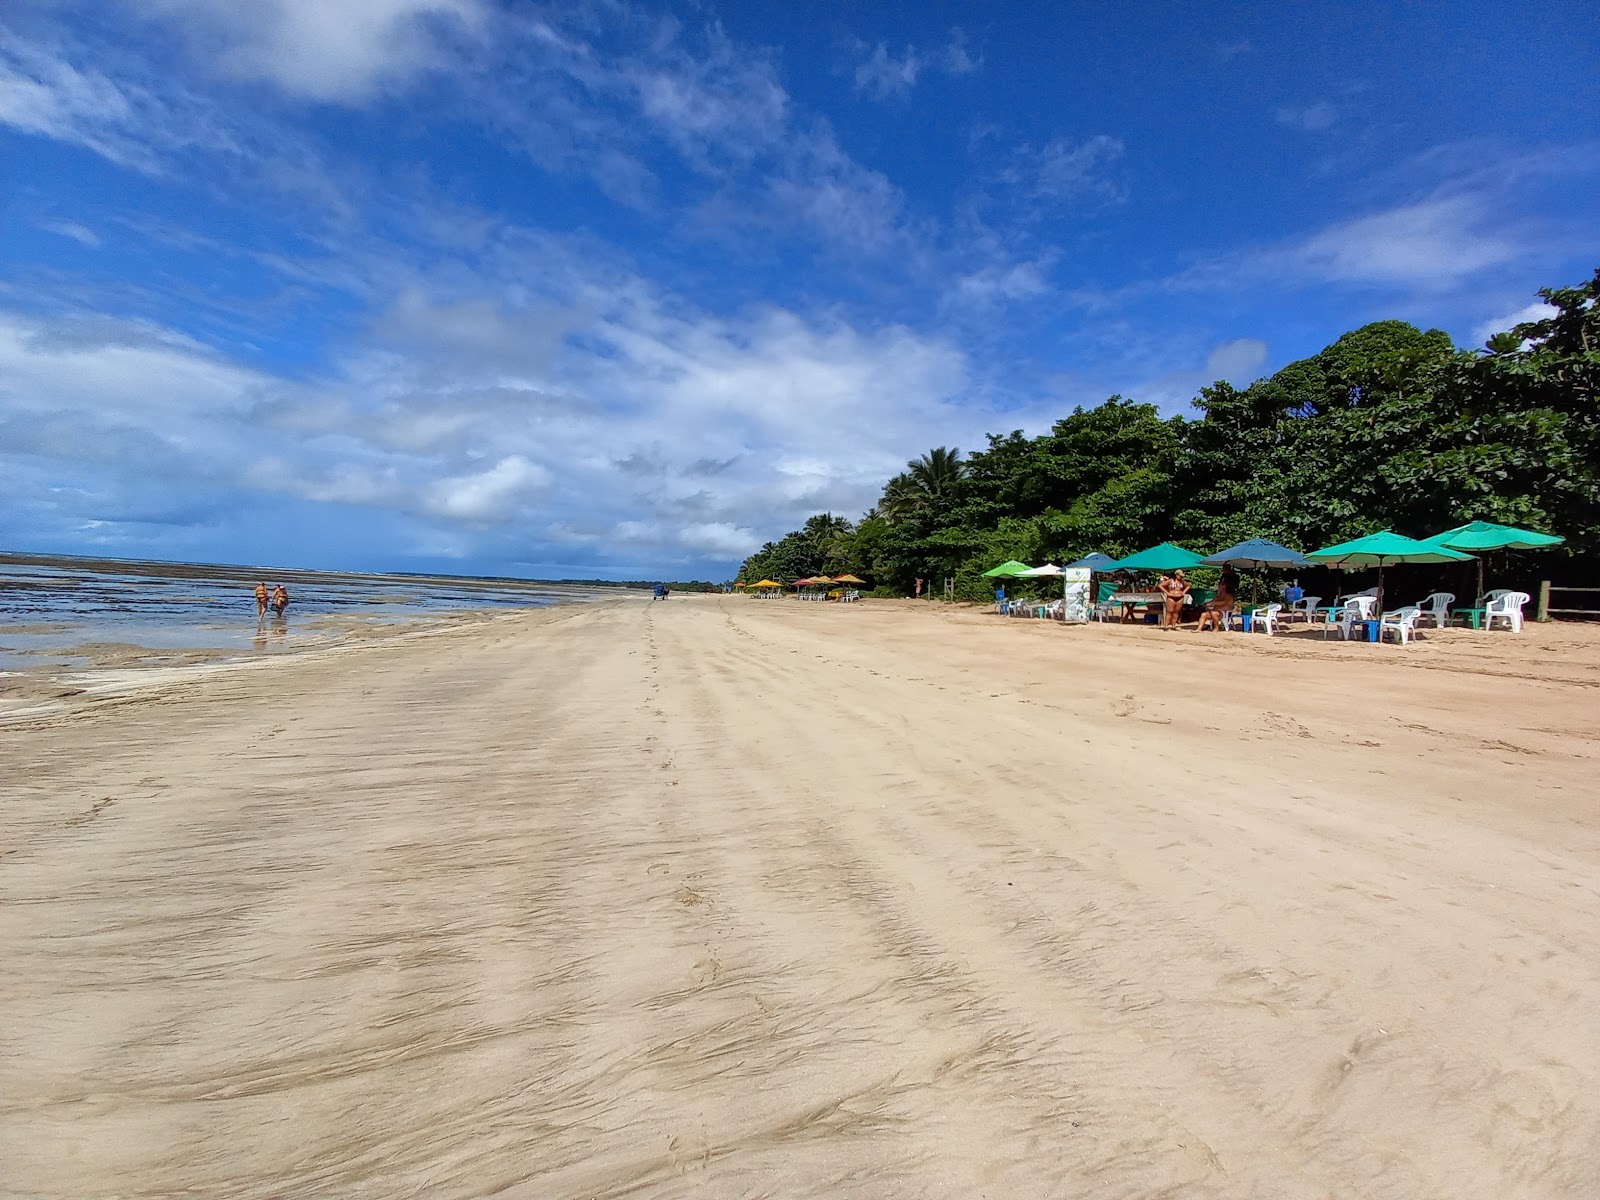 Quarta Praia'in fotoğrafı geniş plaj ile birlikte